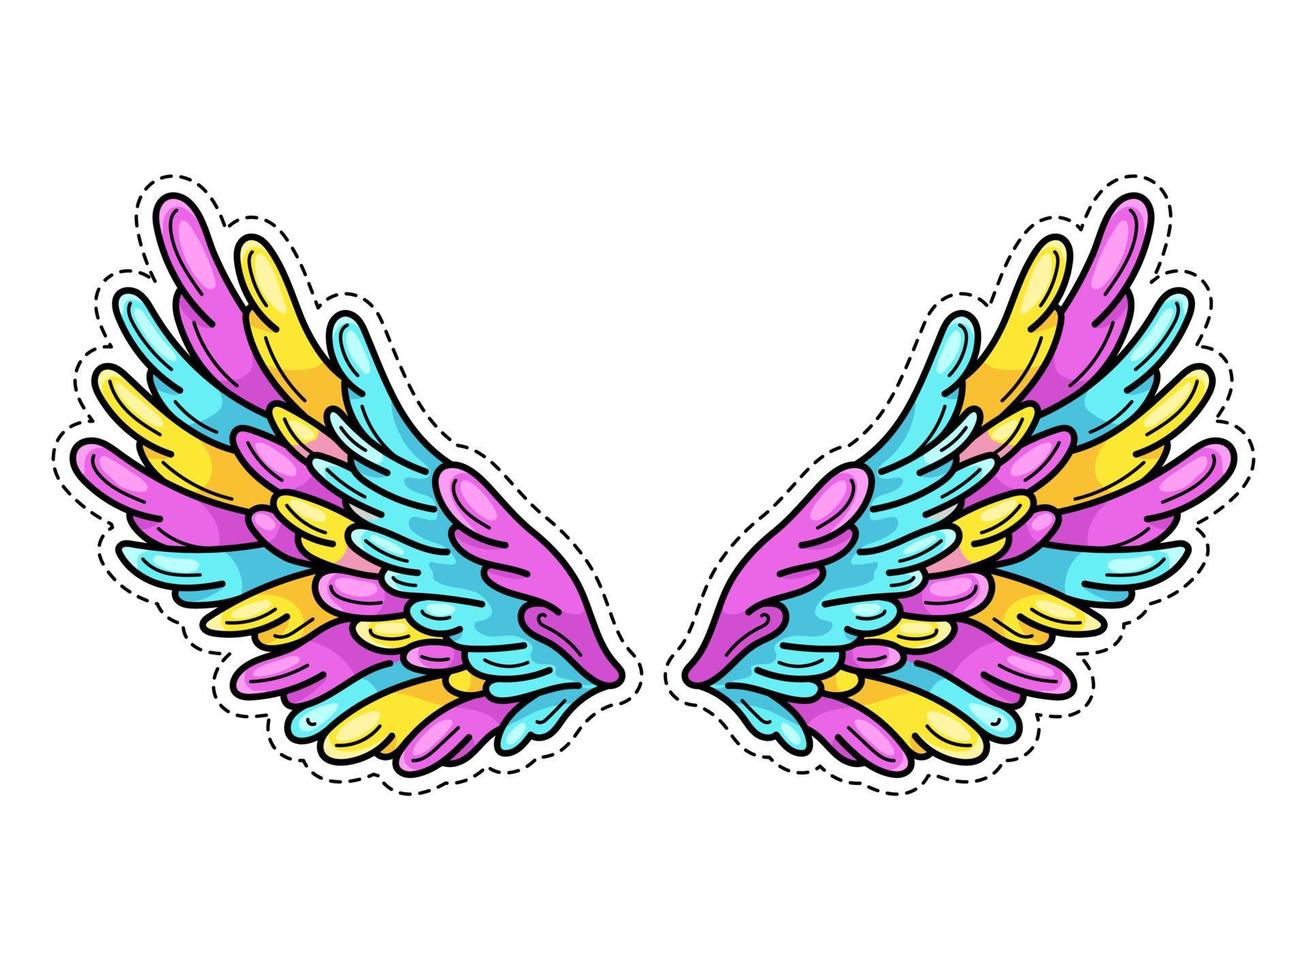 adesivo de asas mágicas no estilo de quadrinhos de arte pop jovem dos anos 80-90. asas de anjo bem espalhadas. elemento de patch retrô na moda inspirado em desenhos antigos. ilustração vetorial isolada no branco. vetor